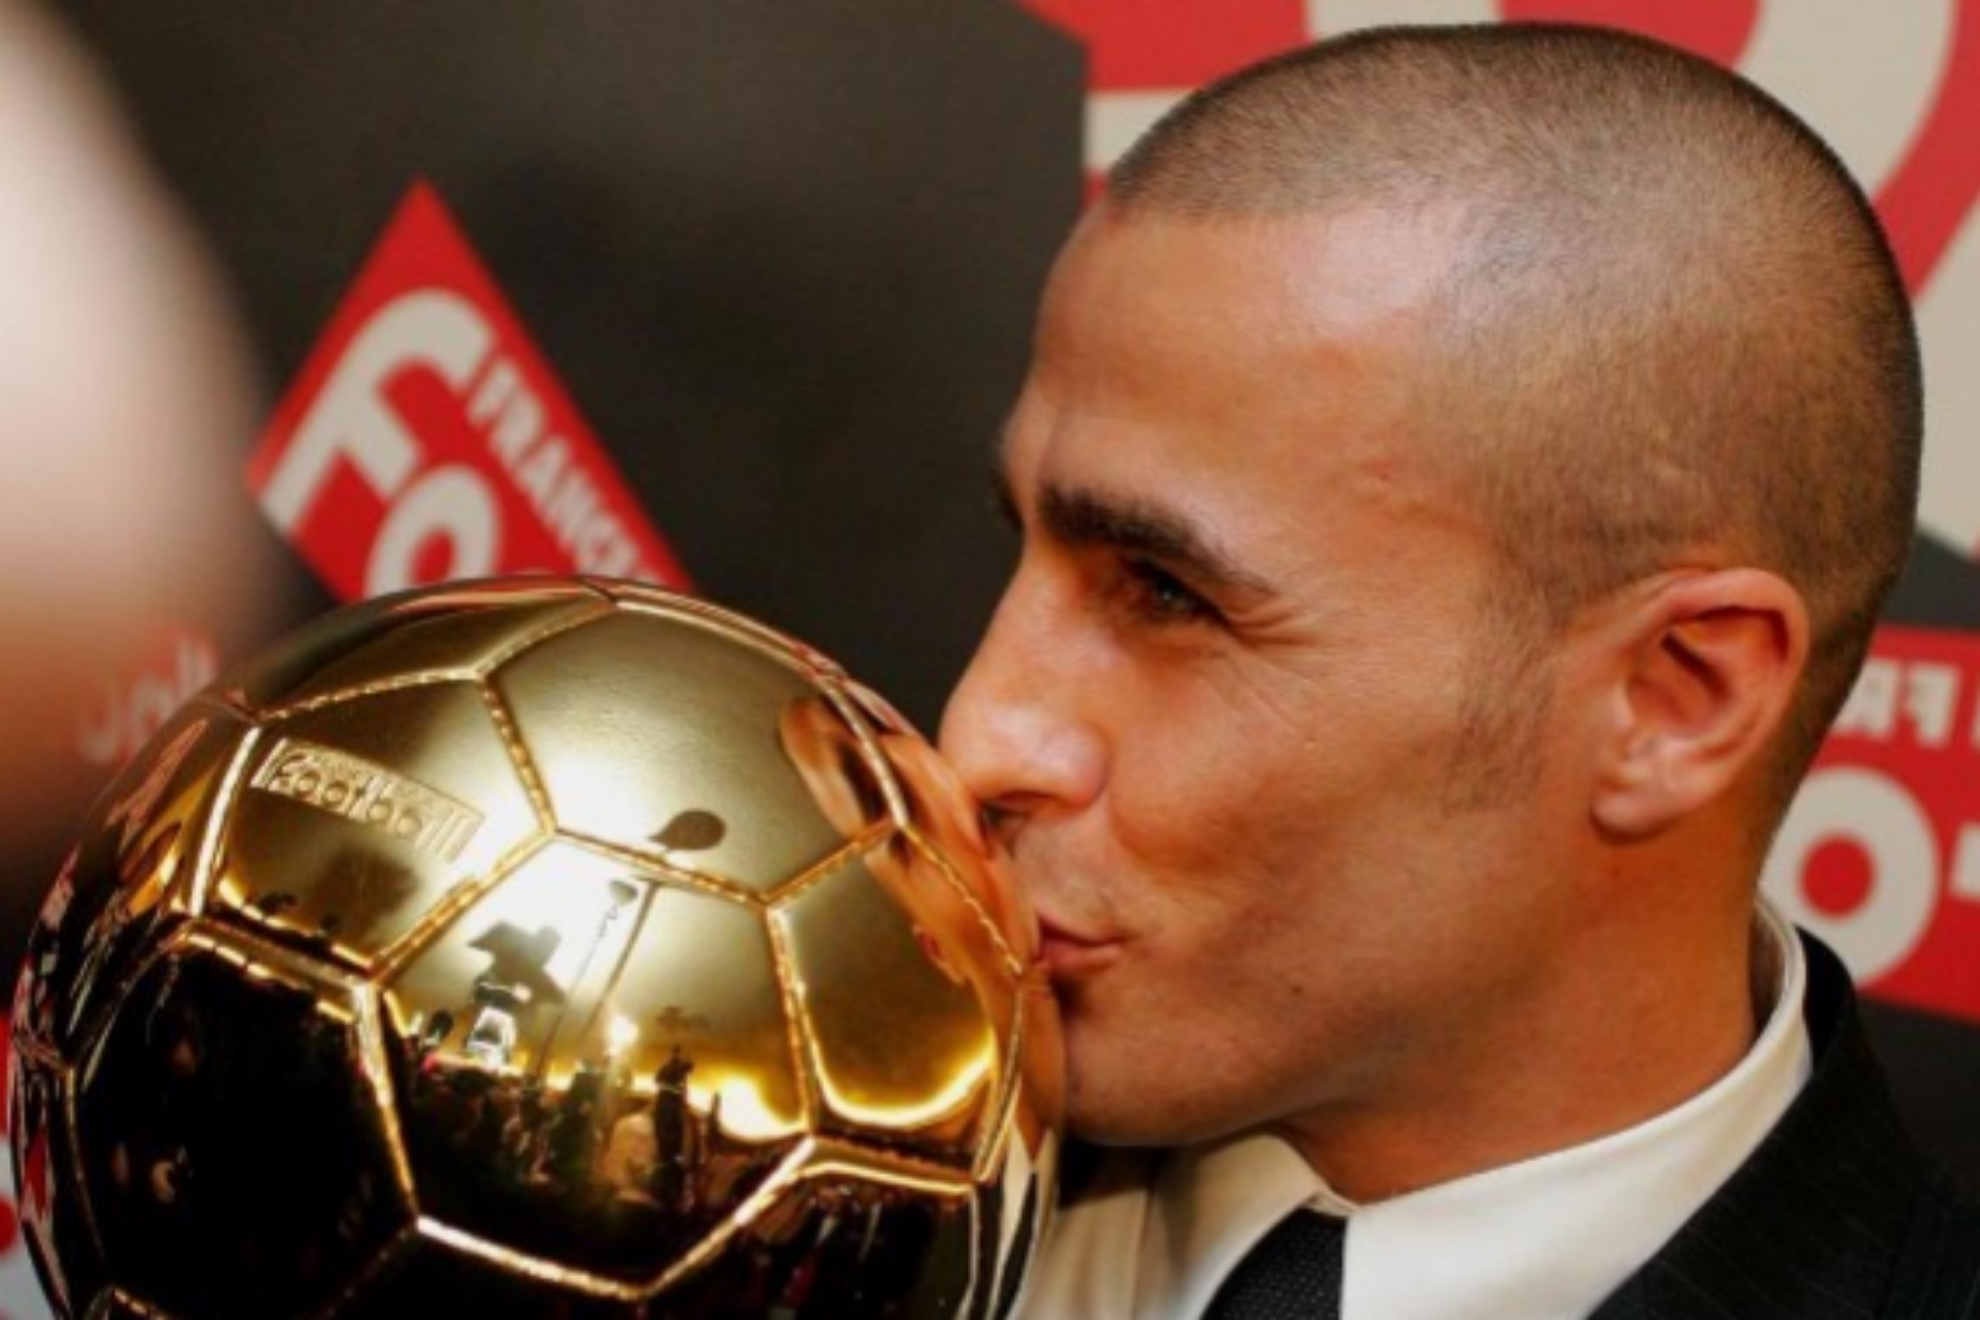 ¿Qué jugadores del Real Madrid han ganado el Balón de Oro? Benzema ha sido el último